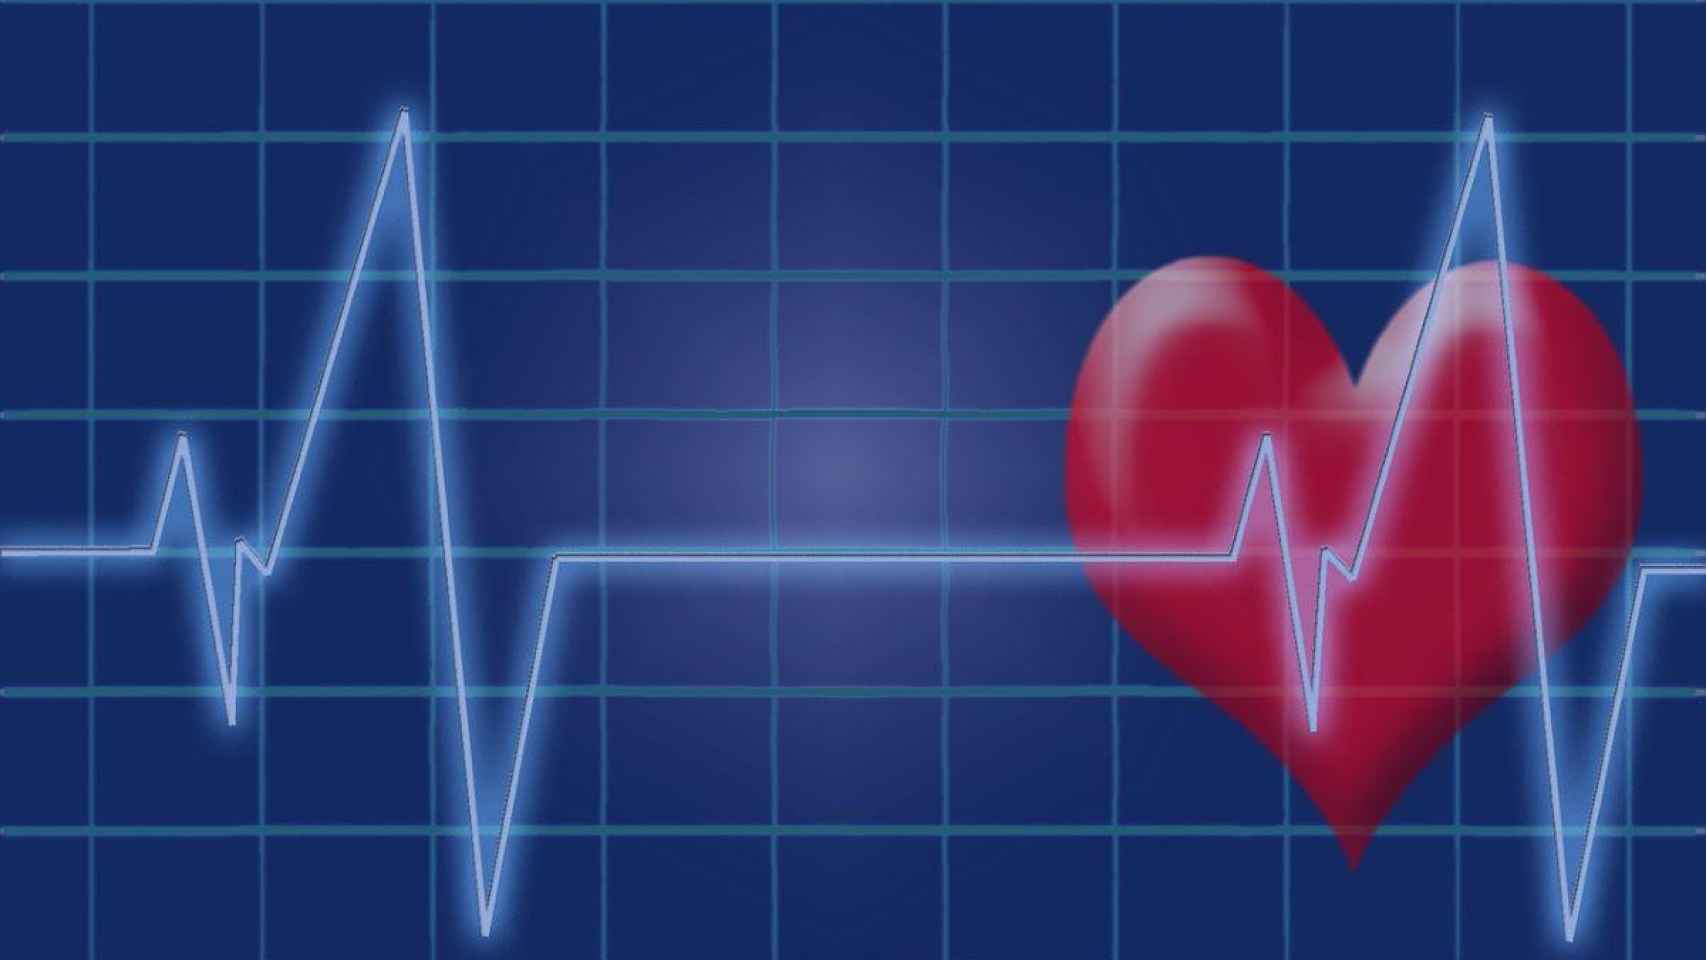 La tecnología es una eficaz herramienta para tratar las enfermedades del corazón / QUIRÓNSALUD